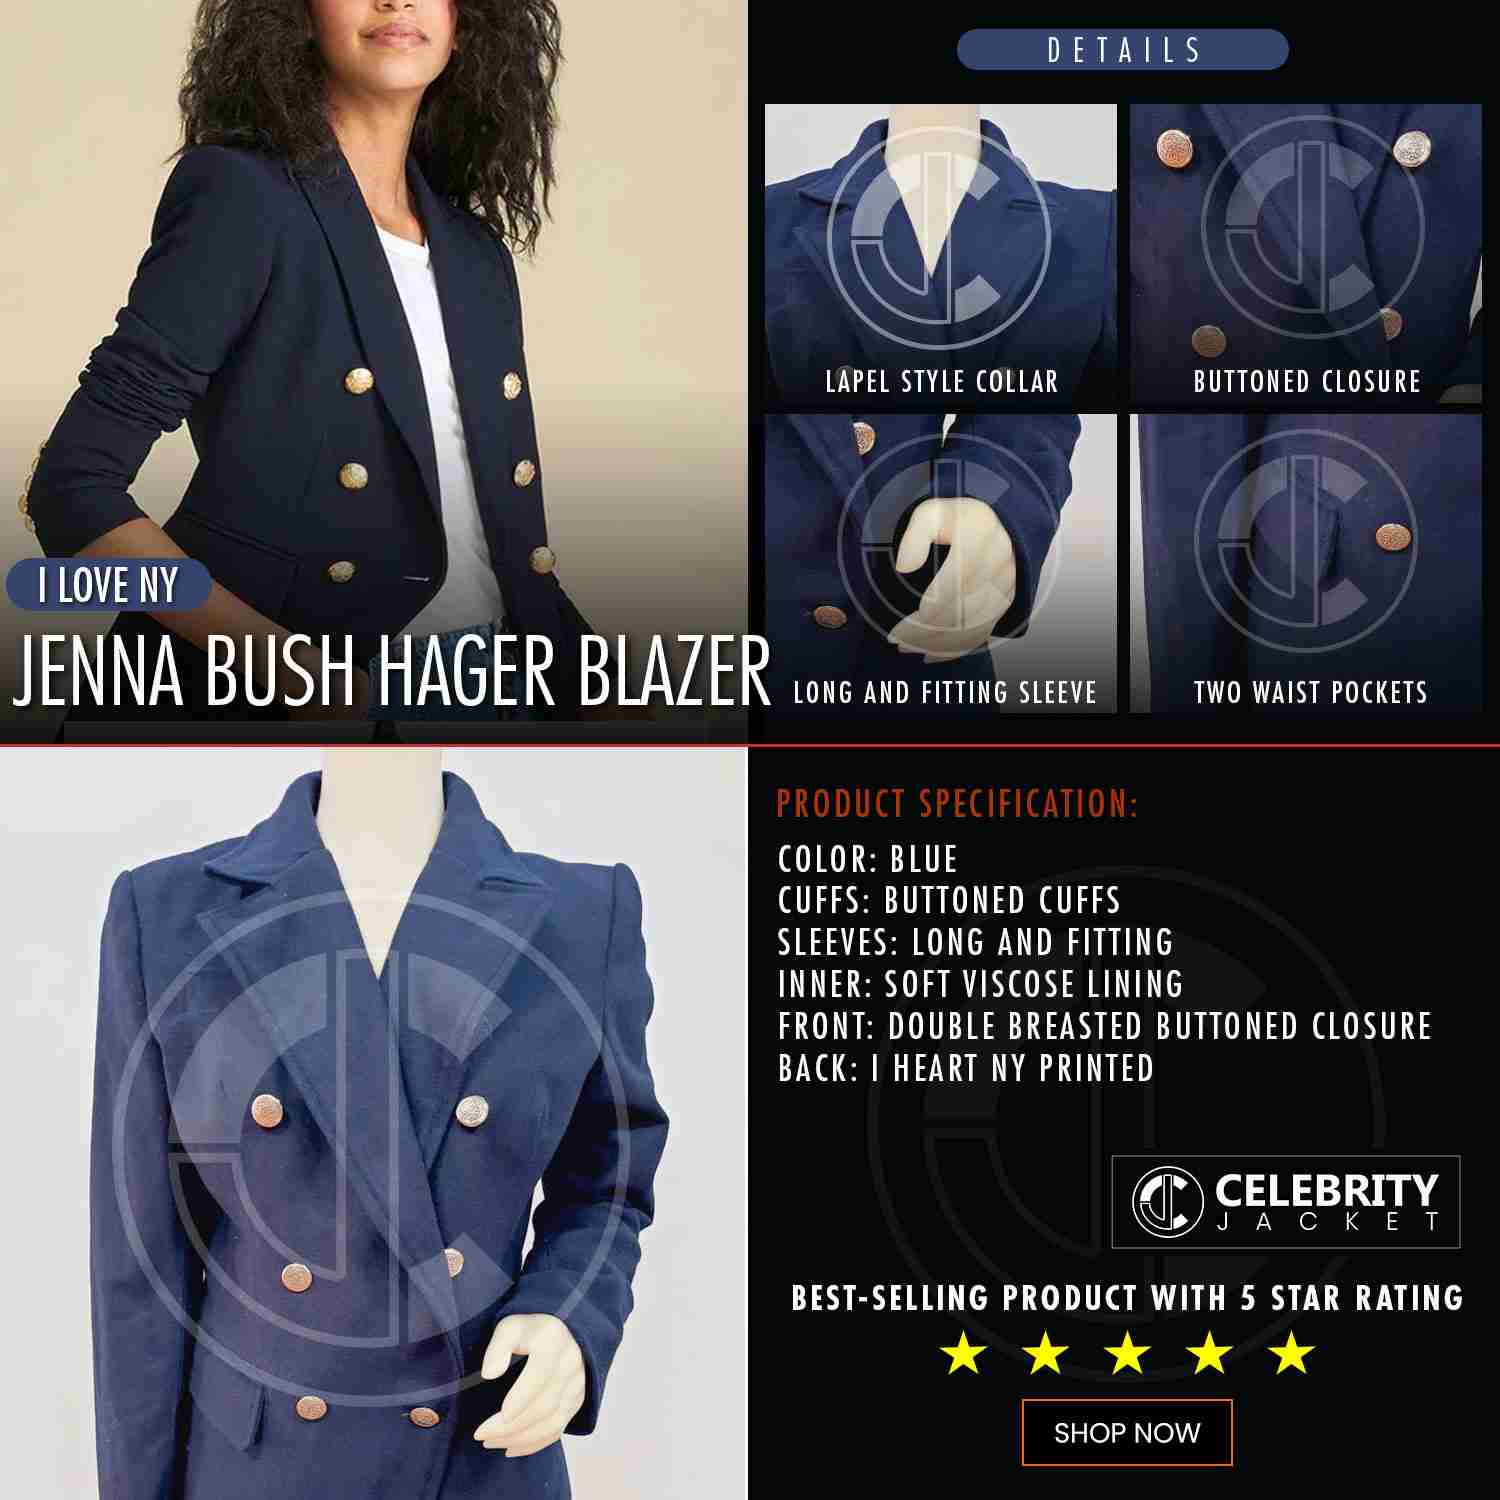 I Love NY Jenna Bush Hager Blazer